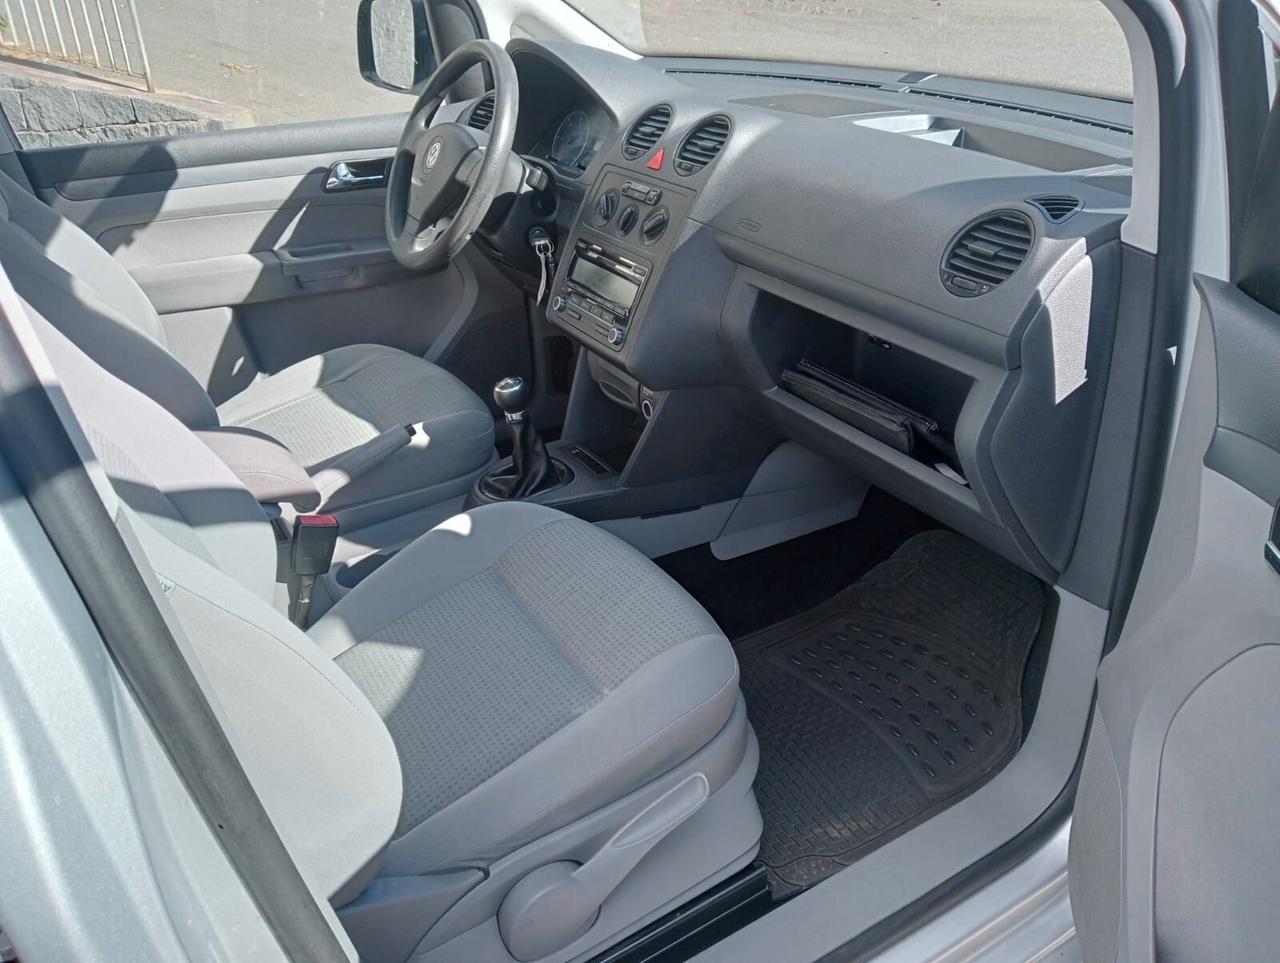 Volkswagen Caddy Pianale ribassato con rampa per disabili carrozzina